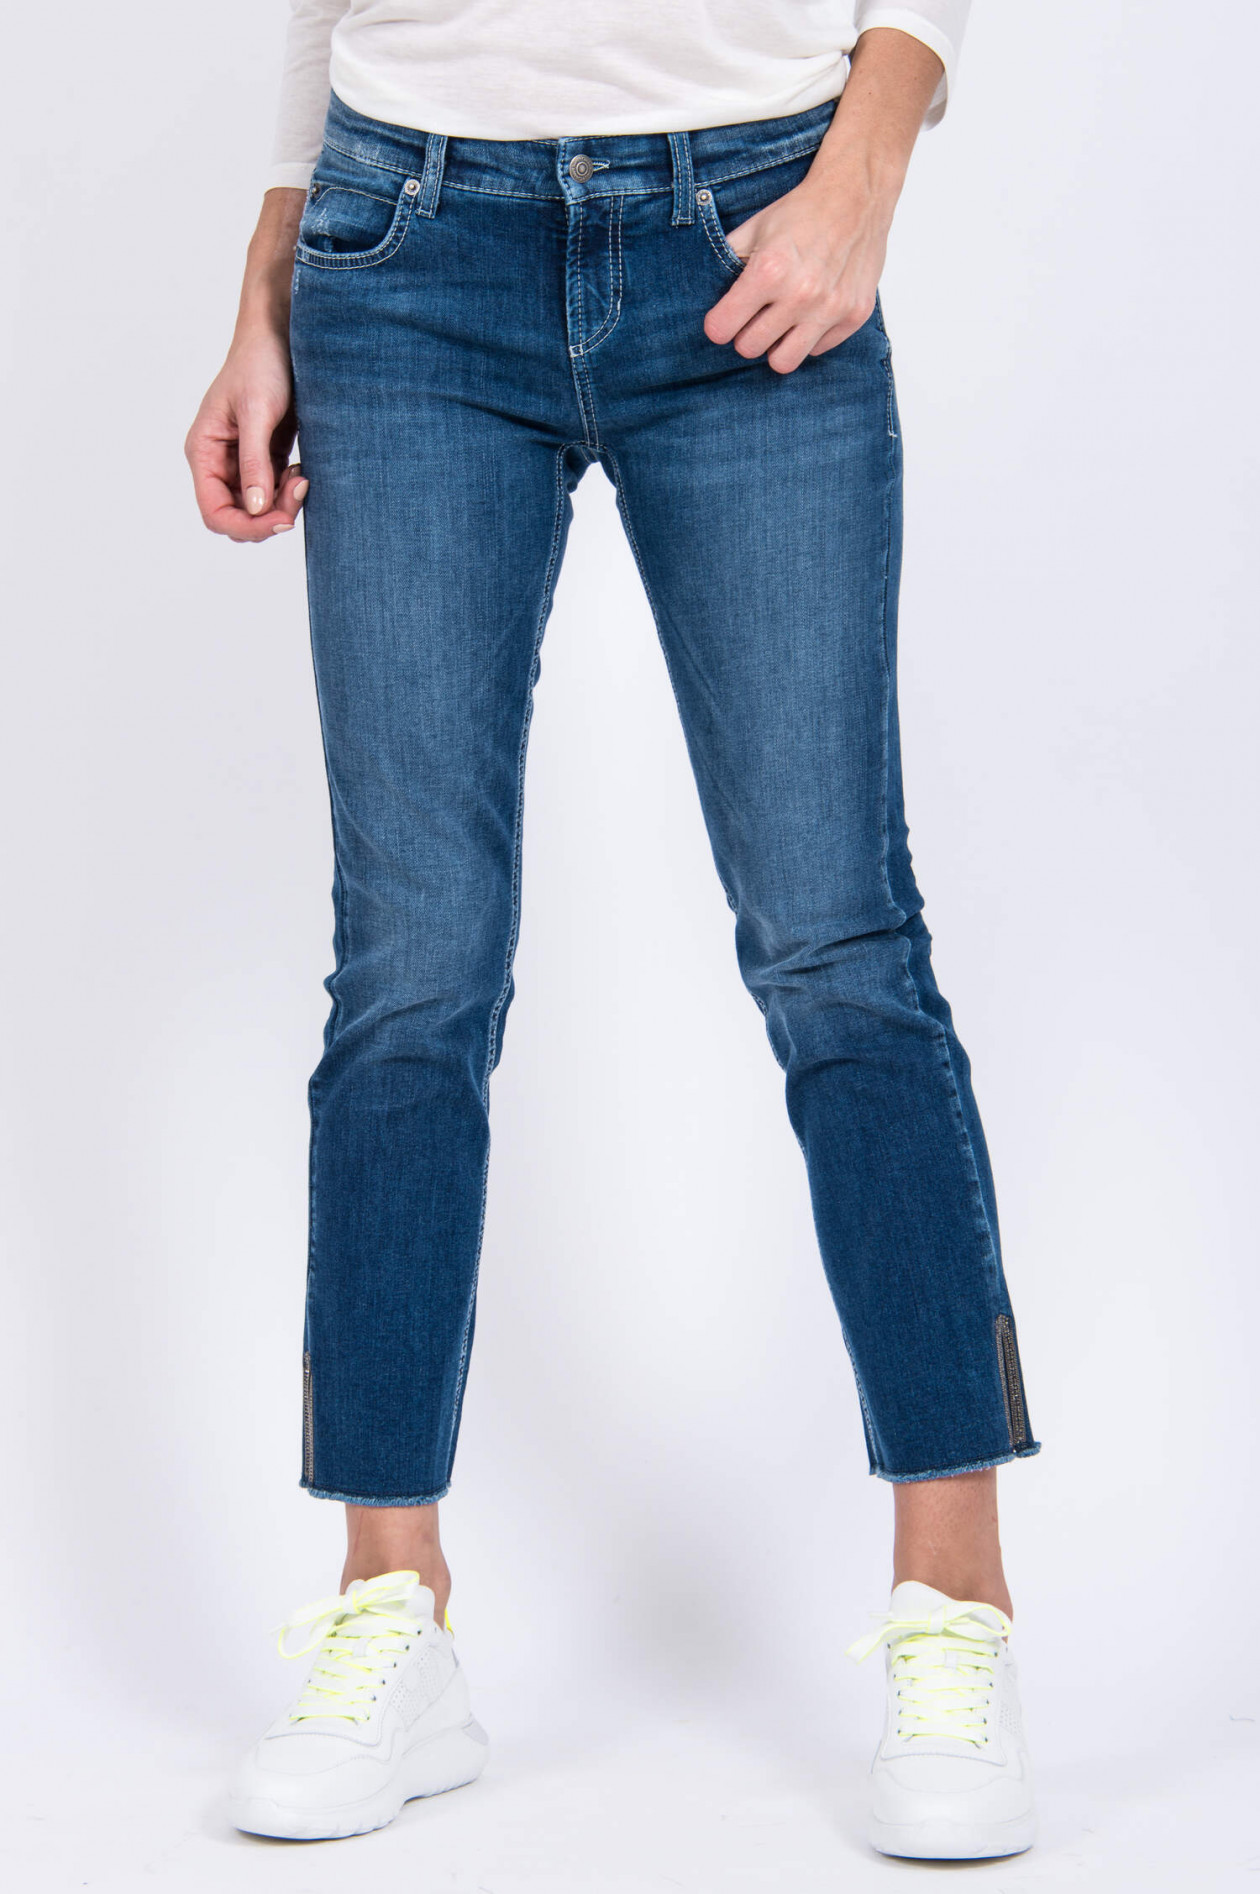 Cambio Jeans TESS Schmuckstein-Detail in | GRUENER.AT